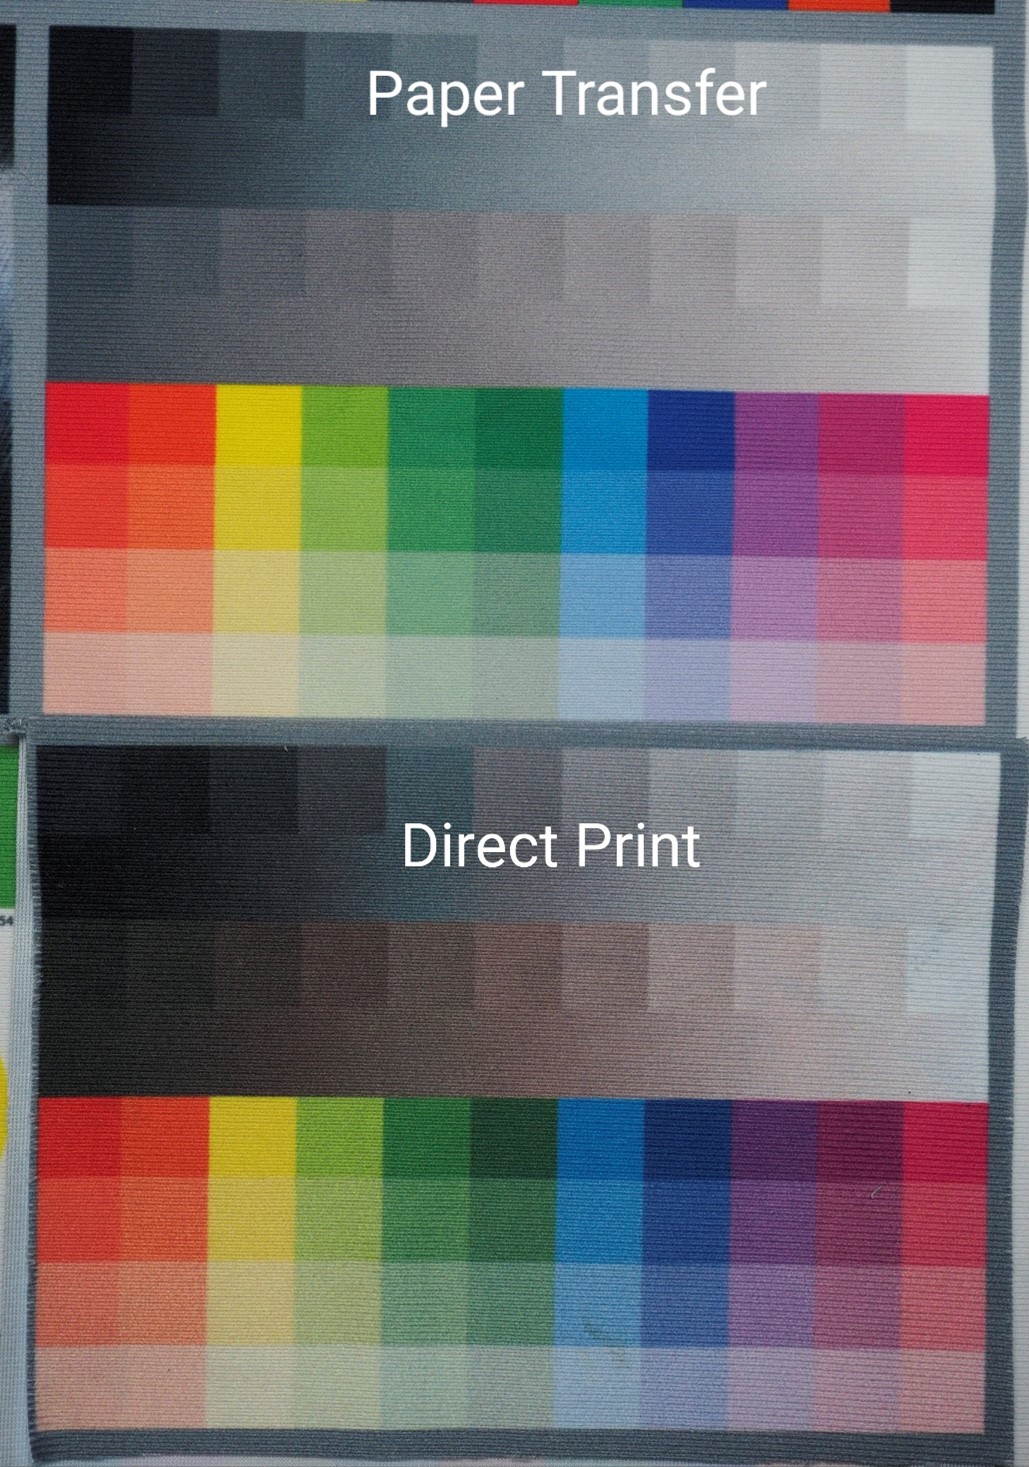 เปรียบเทียบการผสมสี งานพิมพ์ Paper Transfer กับ Direct Print